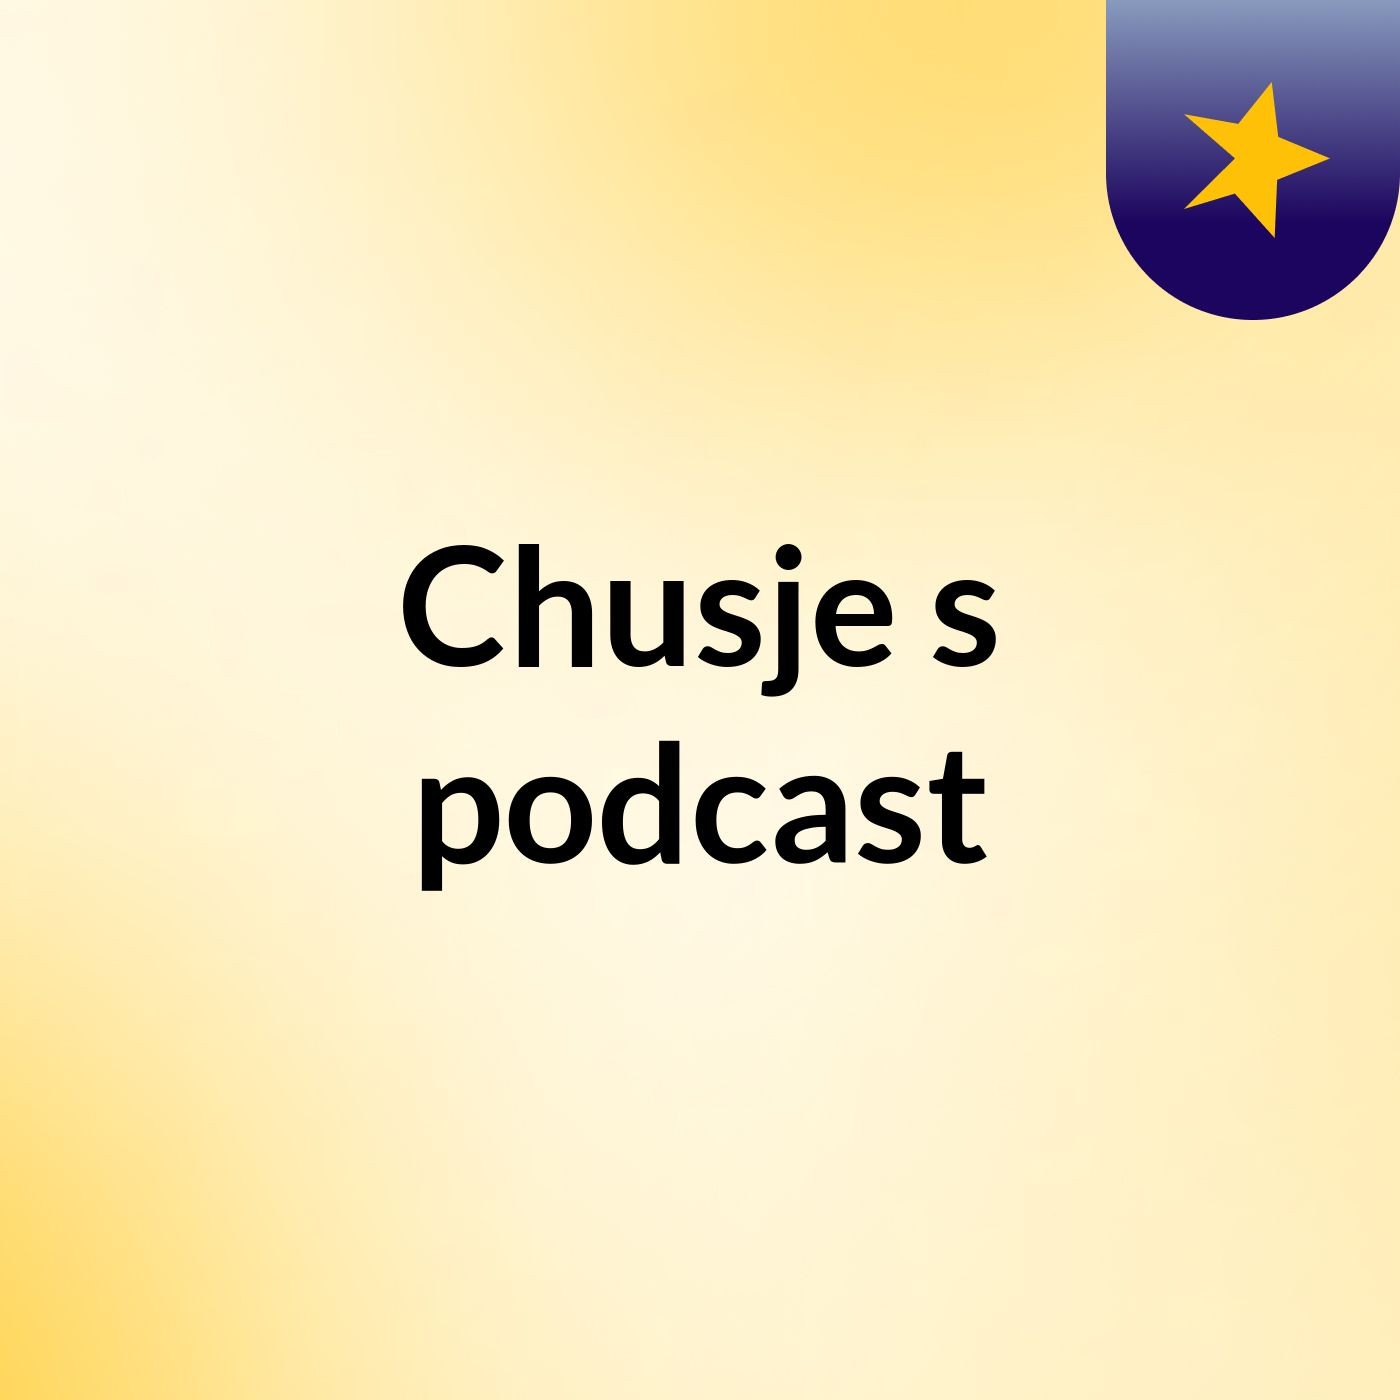 Chusje's podcast